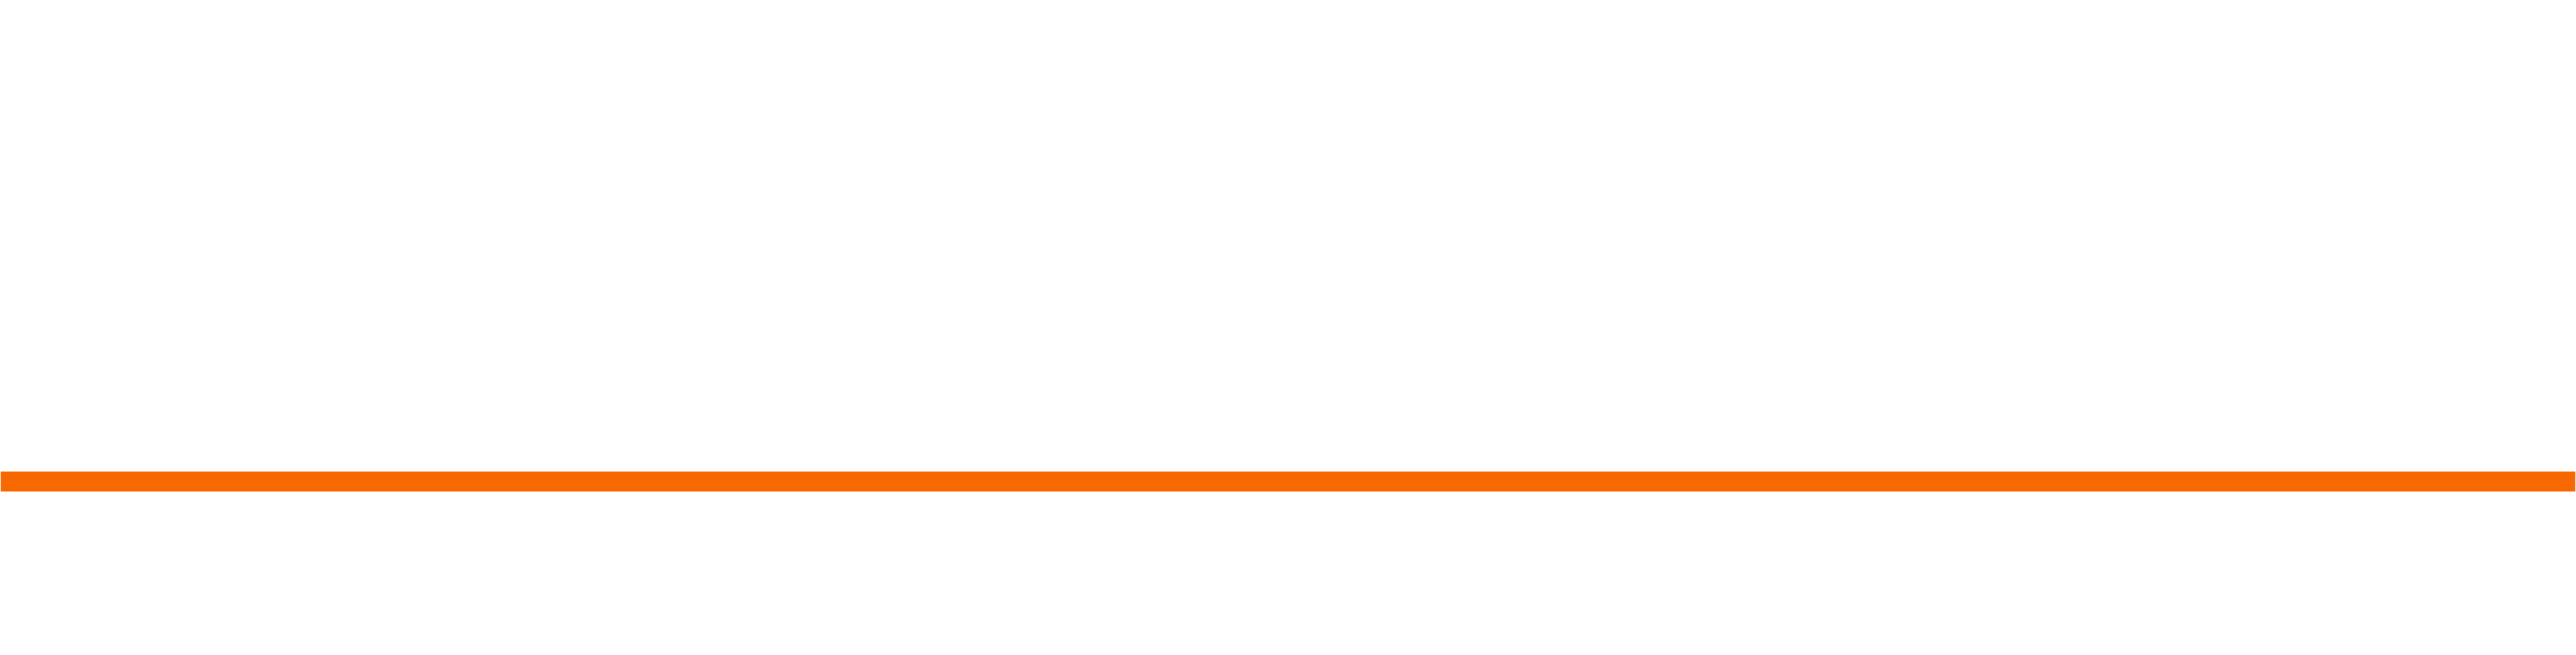 Mercer University Innovation Center